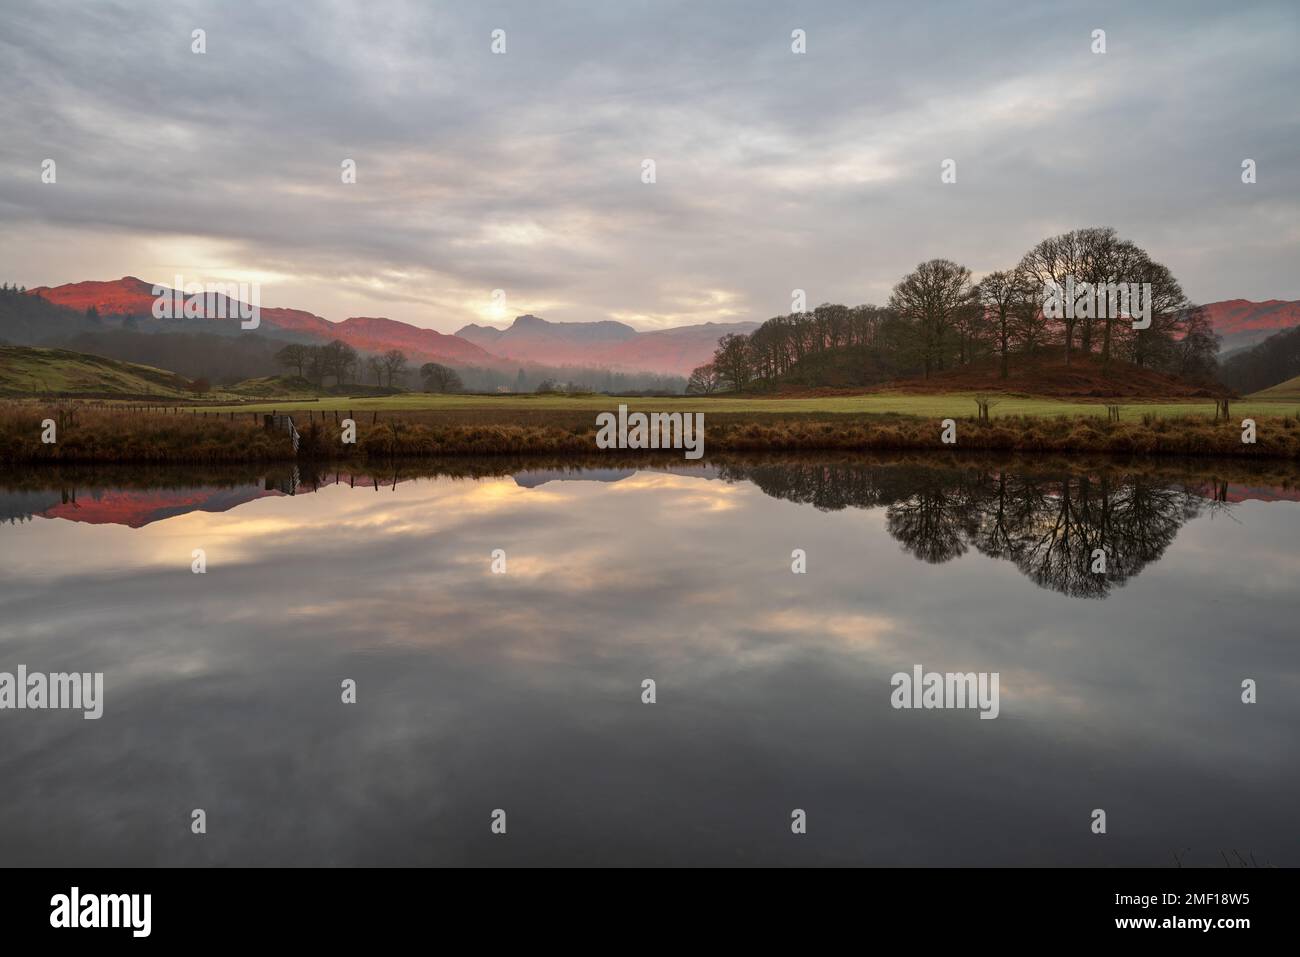 Wunderschönes Morgenlicht auf den Bergen von Cumbrian, das sich in einem ruhigen Fluss spiegelt, an einem ruhigen Morgen am Fluss Brathay im Lake District, Großbritannien. Stockfoto